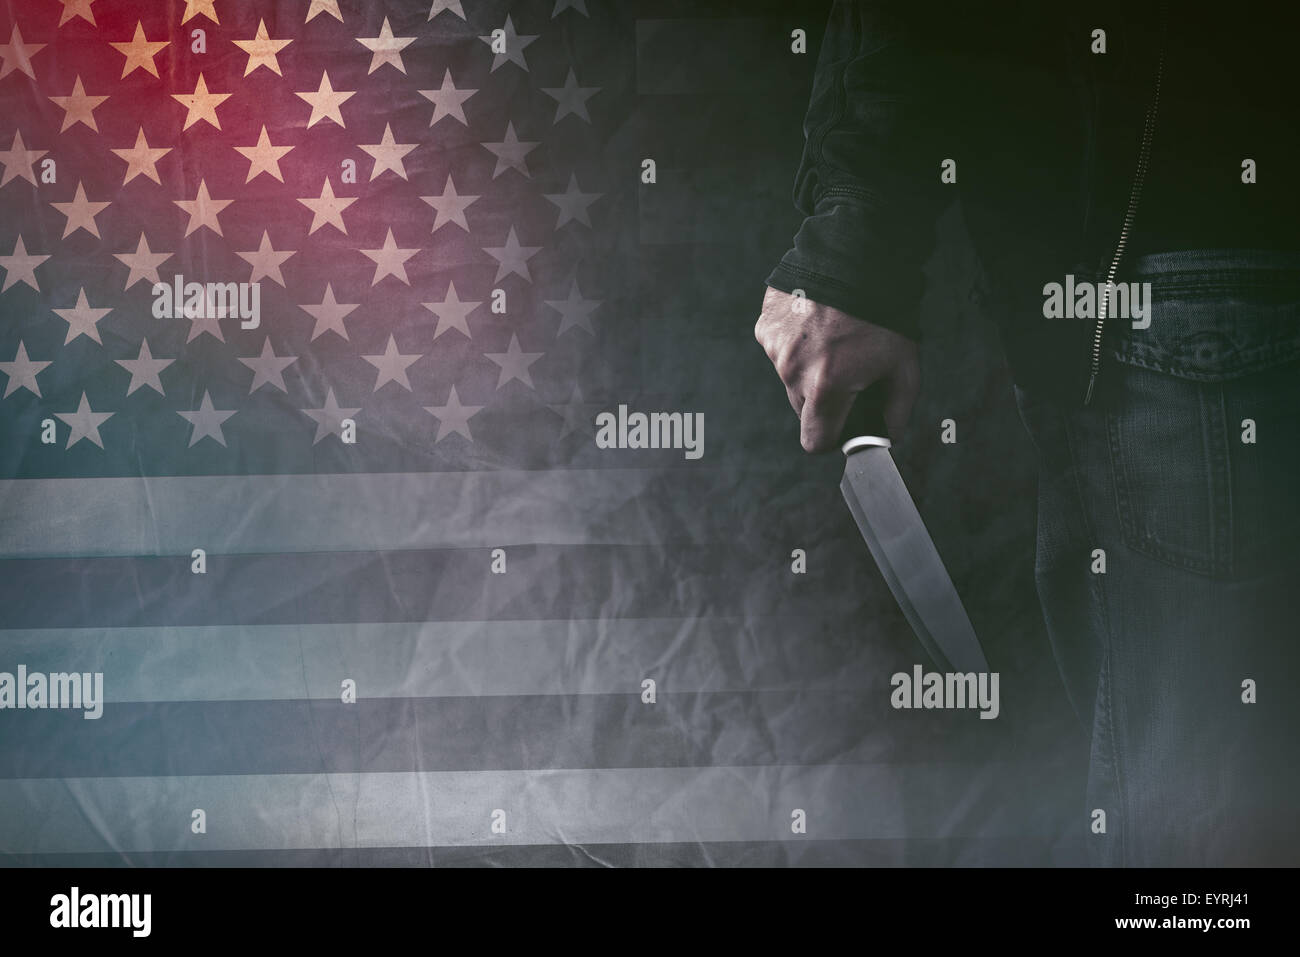 American asesino en serie, hombre mano con un cuchillo afilado y grunge usa la bandera de fondo, imagen de tonos retro Foto de stock